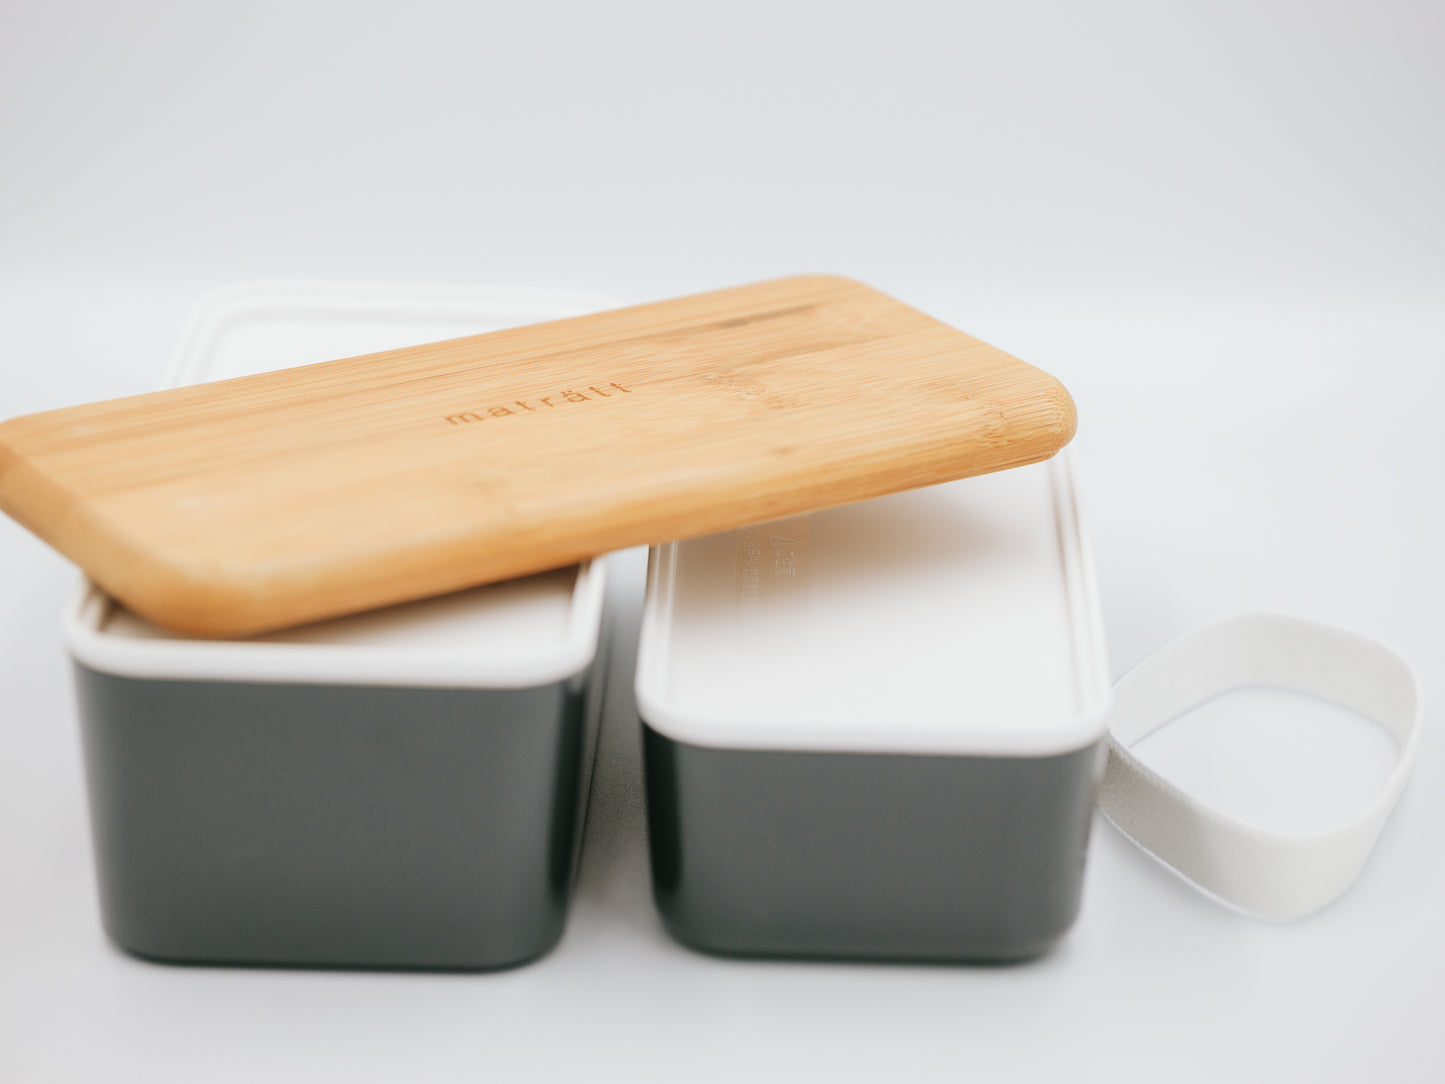 Maträtt Two-tier Lunchbox | Charcoal